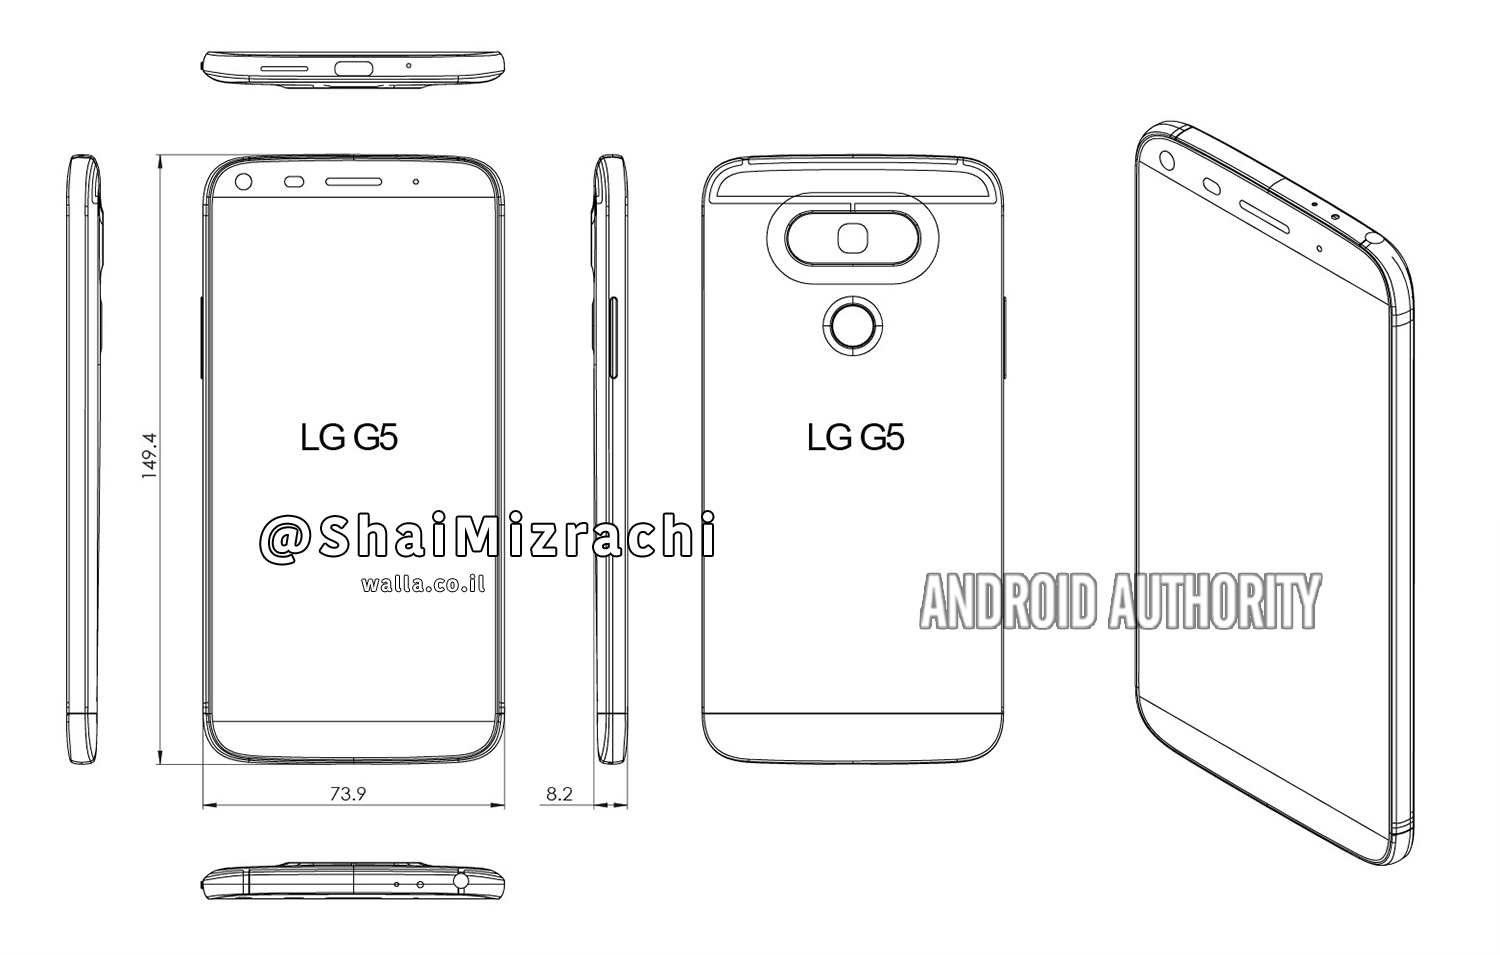 หลุดโครงร่างดีไซน์ LG G5 เปลี่ยนดีไซน์ใหม่ ย้ายปุ่มเสียงไปอยู่ด้านข้างแทนซะงั้น